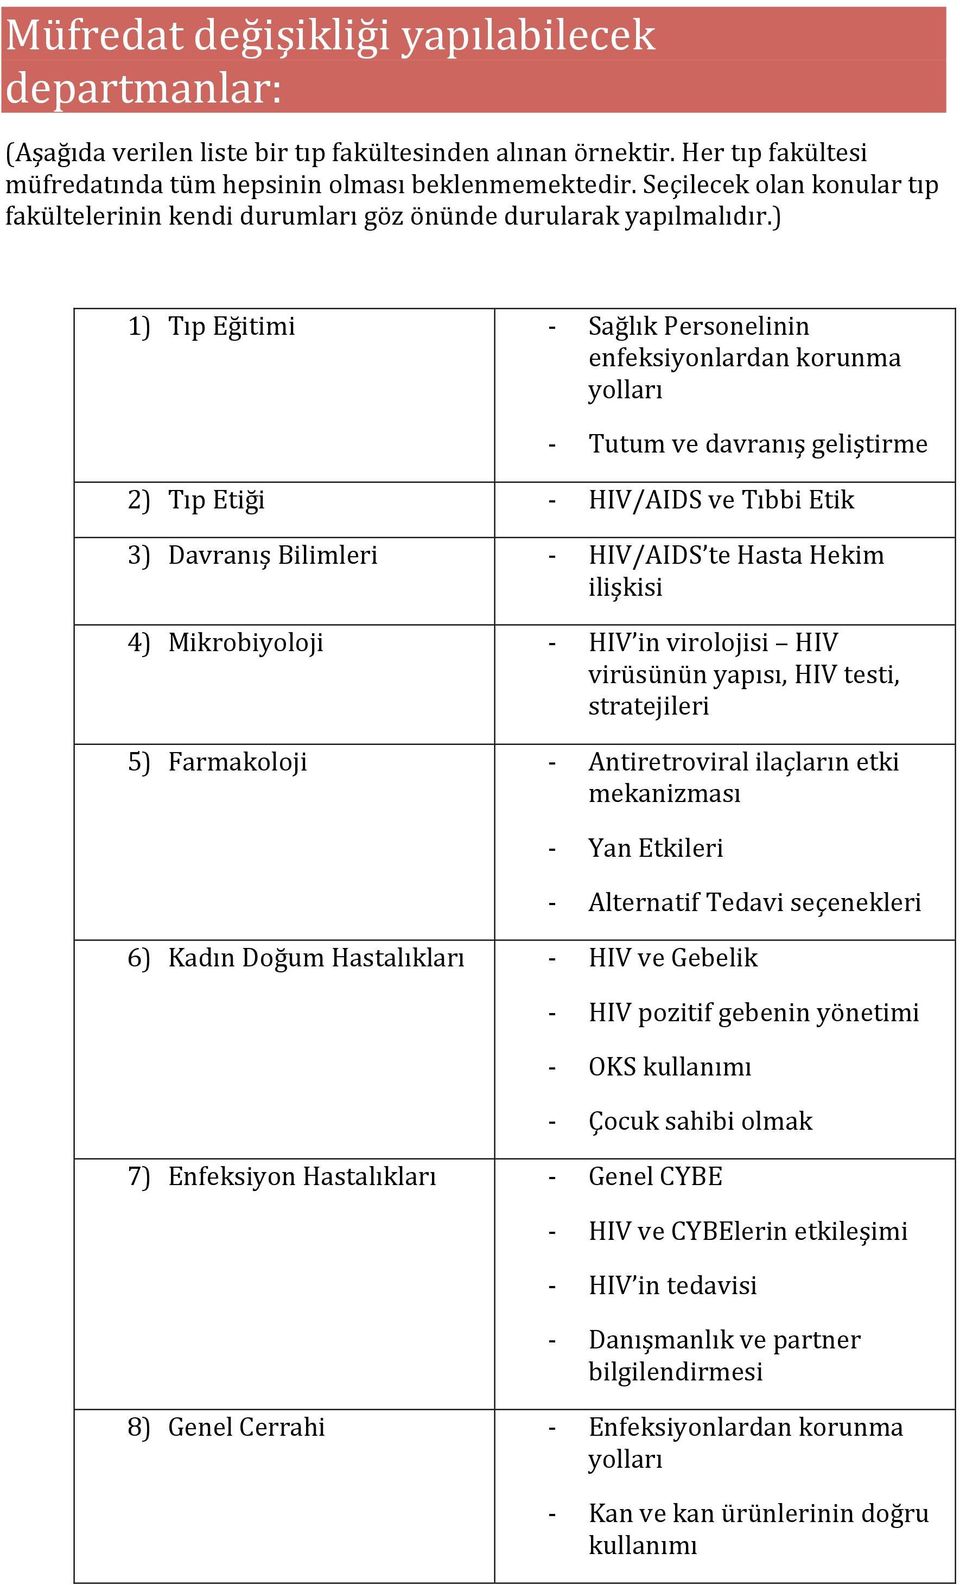 ) 1) TıpEğitimi SağlıkPersonelinin enfeksiyonlardankorunma yolları Tutumvedavranışgeliştirme 2) TıpEtiği HIV/AIDSveTıbbiEtik 3) DavranışBilimleri HIV/AIDS tehastahekim ilişkisi 4) Mikrobiyoloji HIV